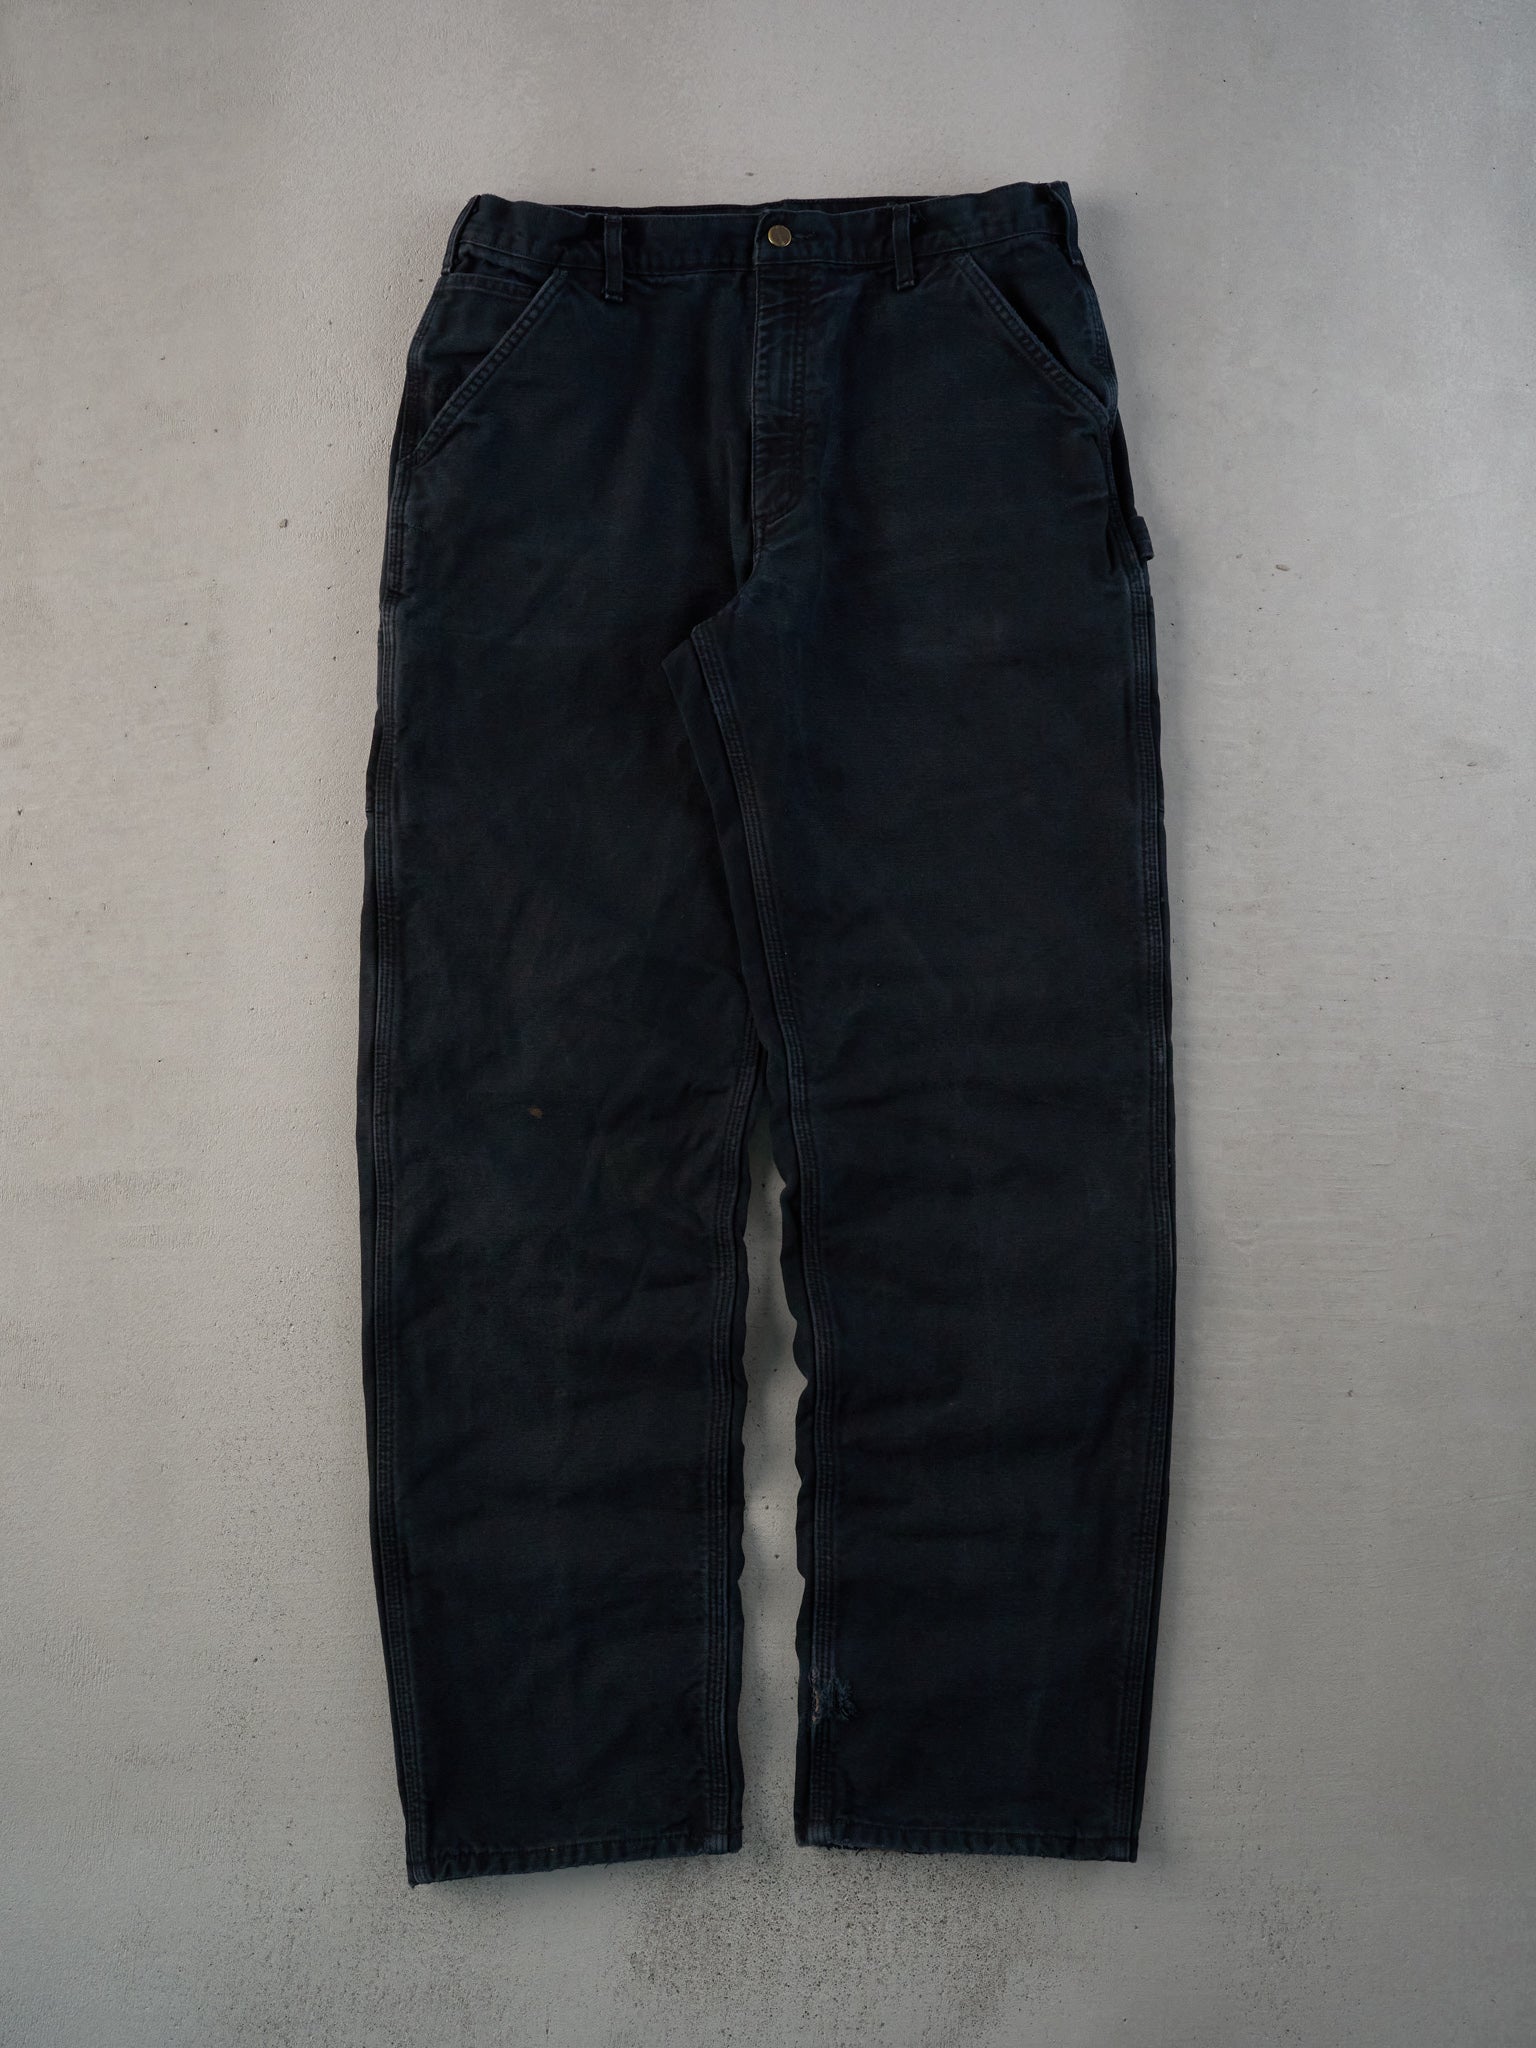 Vintage 90s Black Carhartt Blanket Lined Carpenter Pants (35x35)